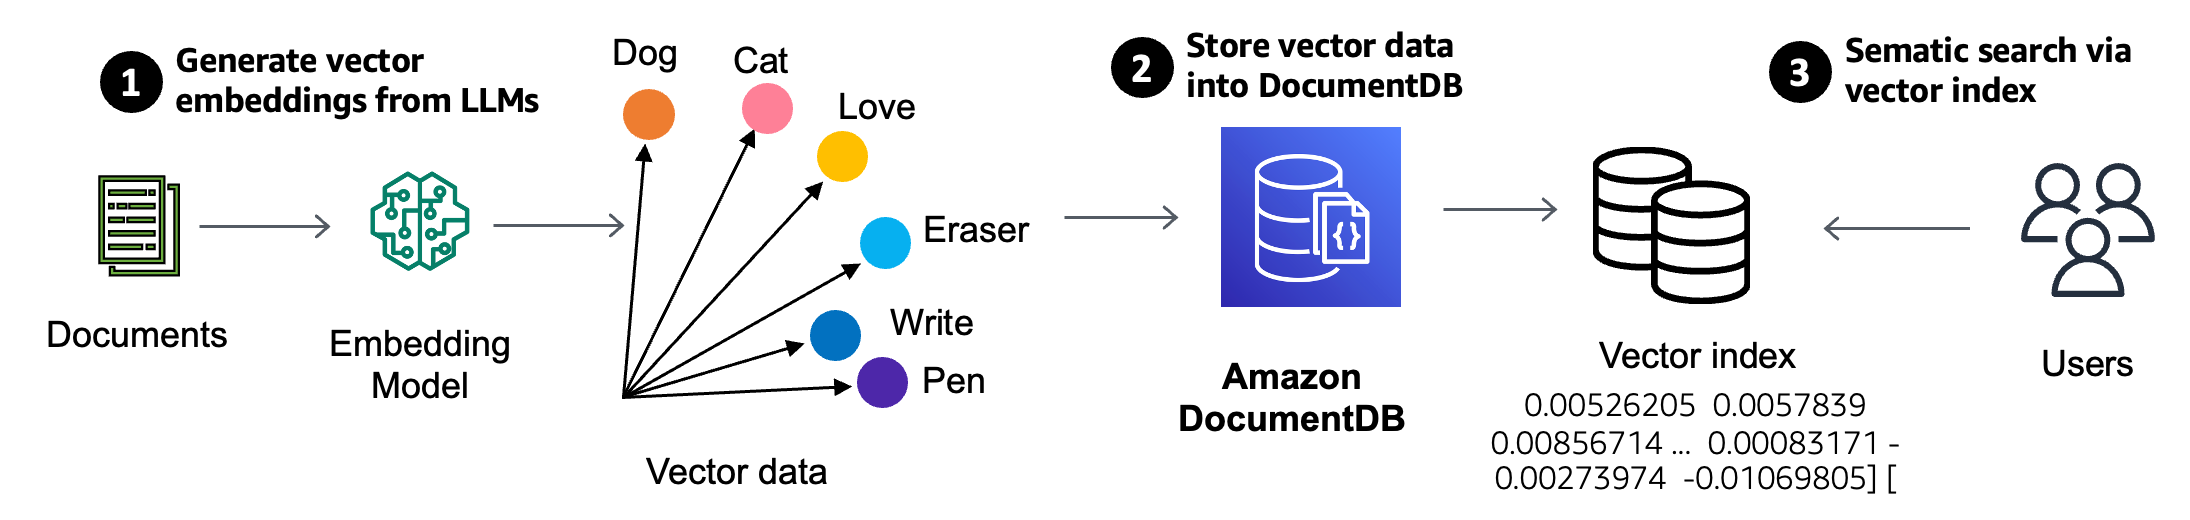 Funkcja wyszukiwania wektorowego jest dostępna w klastrach opartych na instancjach Amazon DocumentDB 5.0. Aby zaimplementować aplikację do wyszukiwania wektorów, generujesz wektory za pomocą modeli osadzania pól w dokumencie i przechowujesz wektory obok danych źródłowych w Amazon DocumentDB.